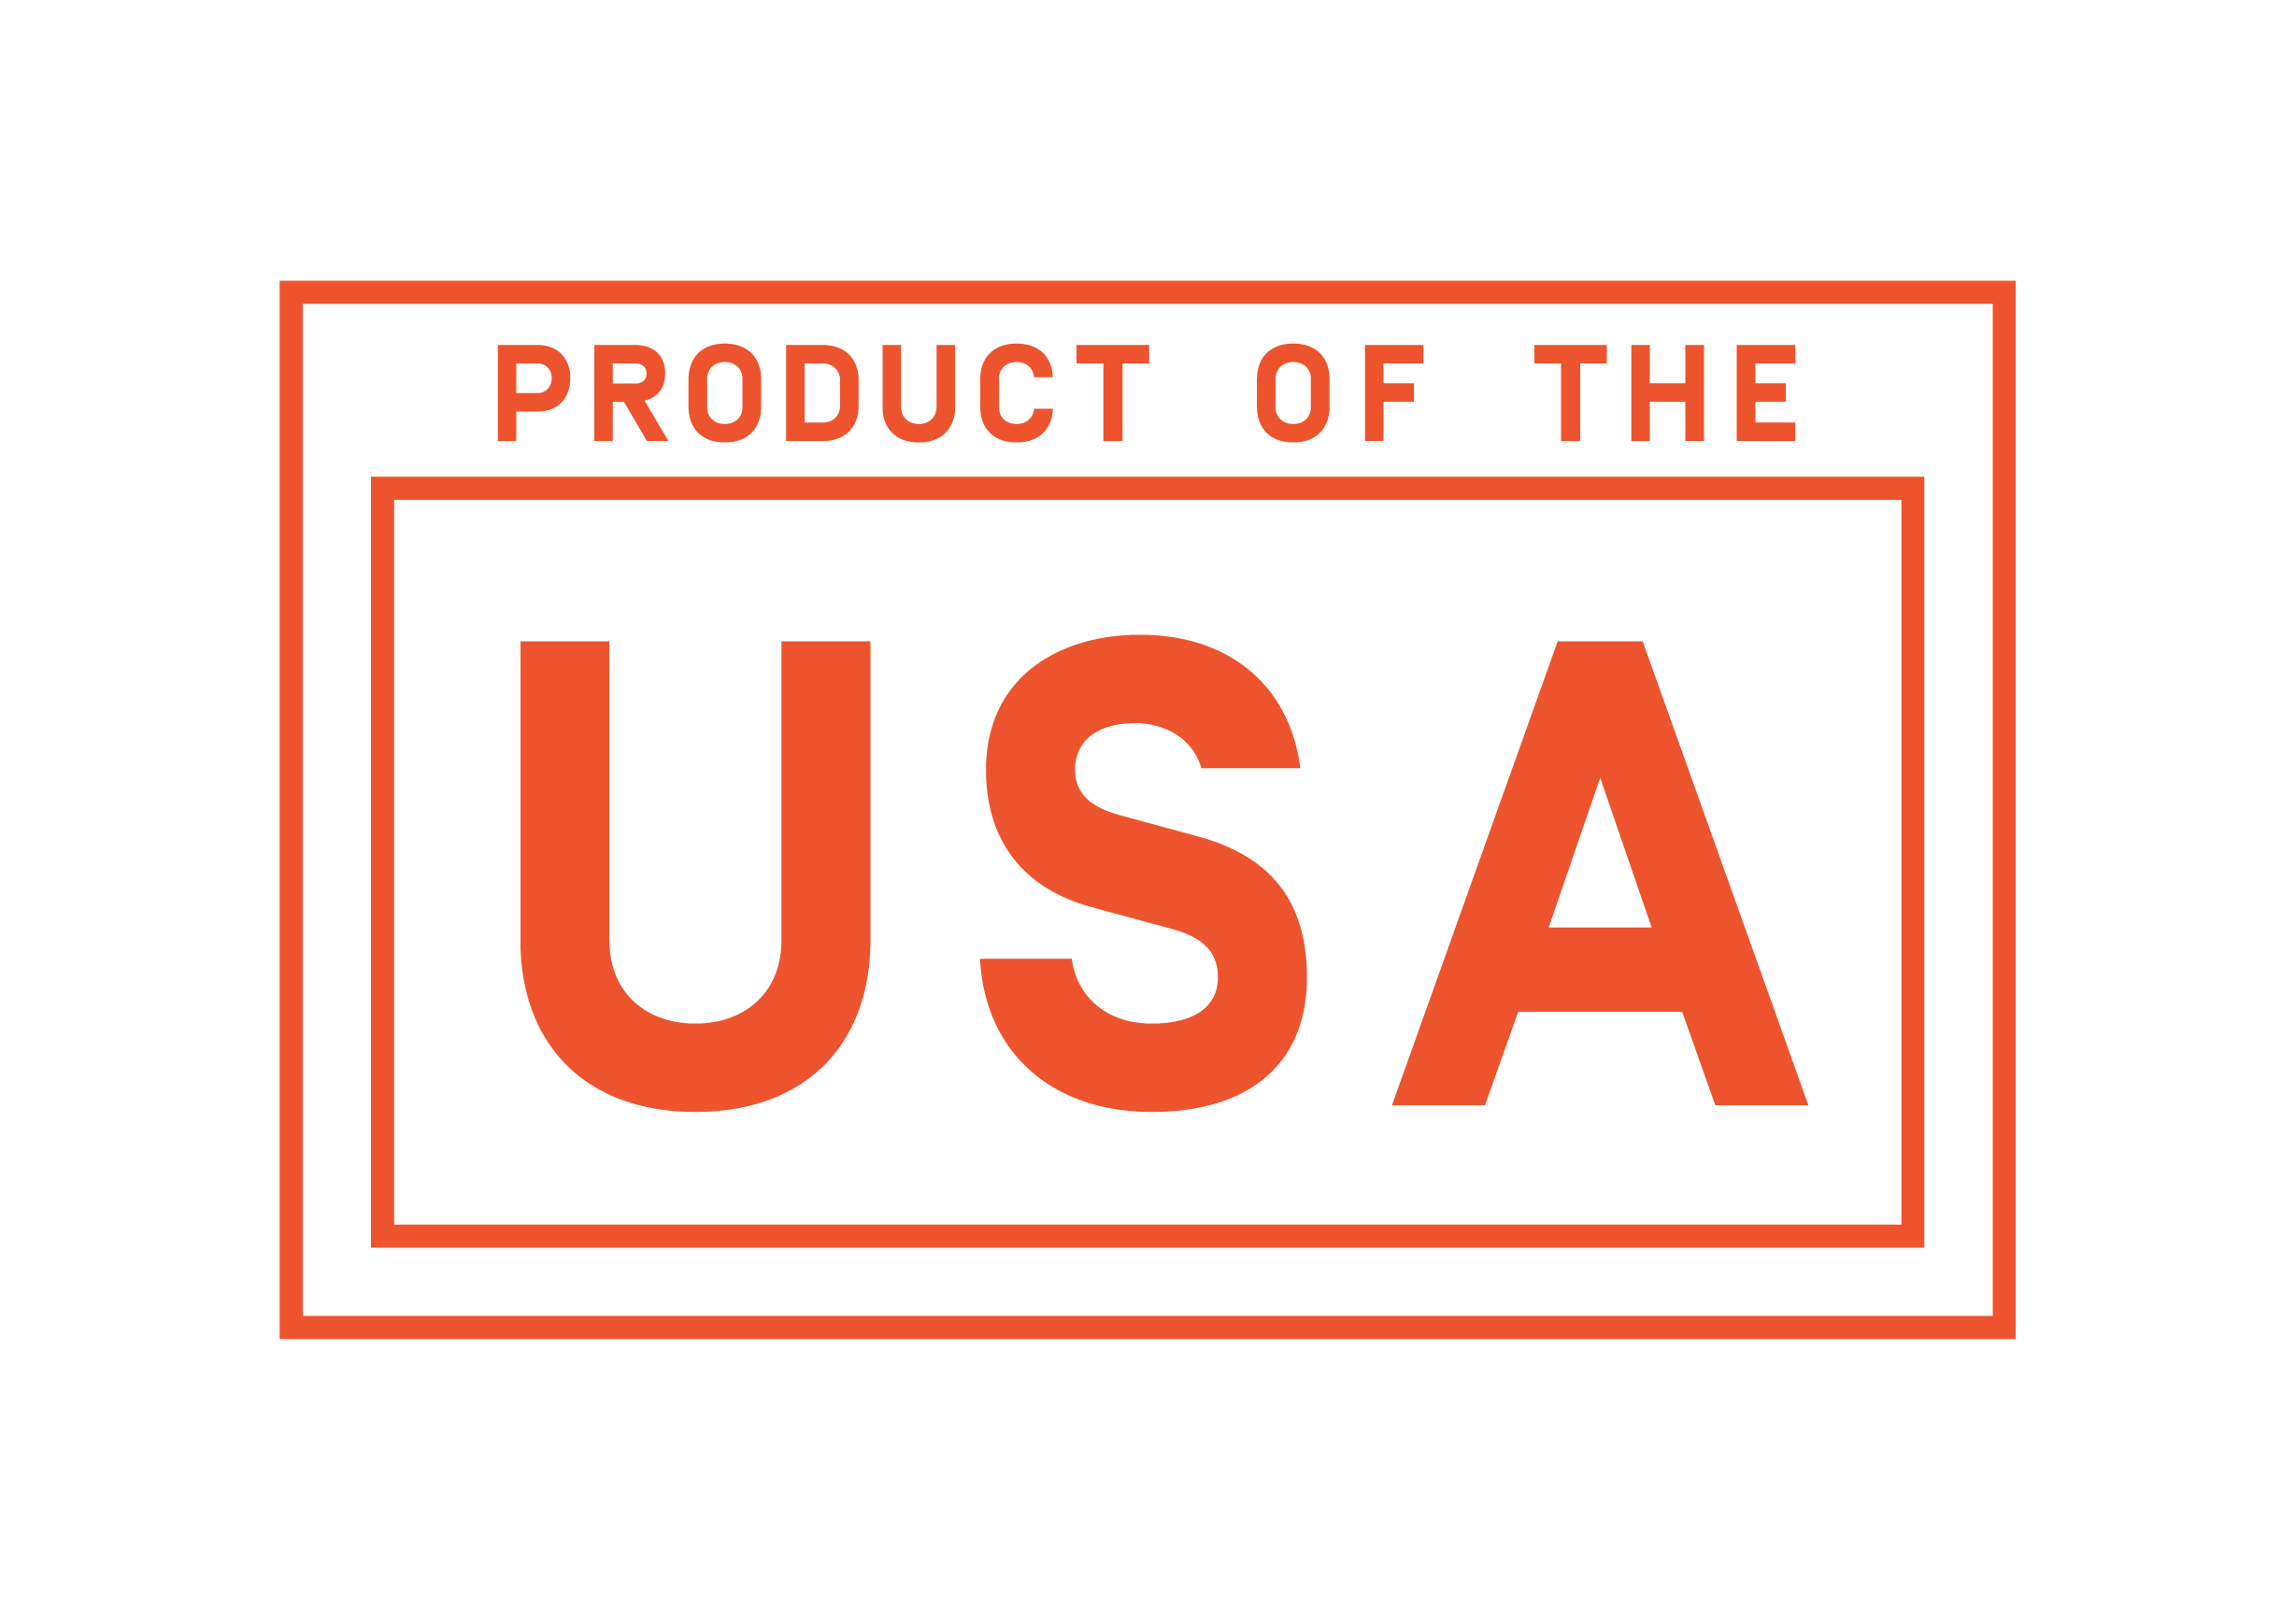 Product USA